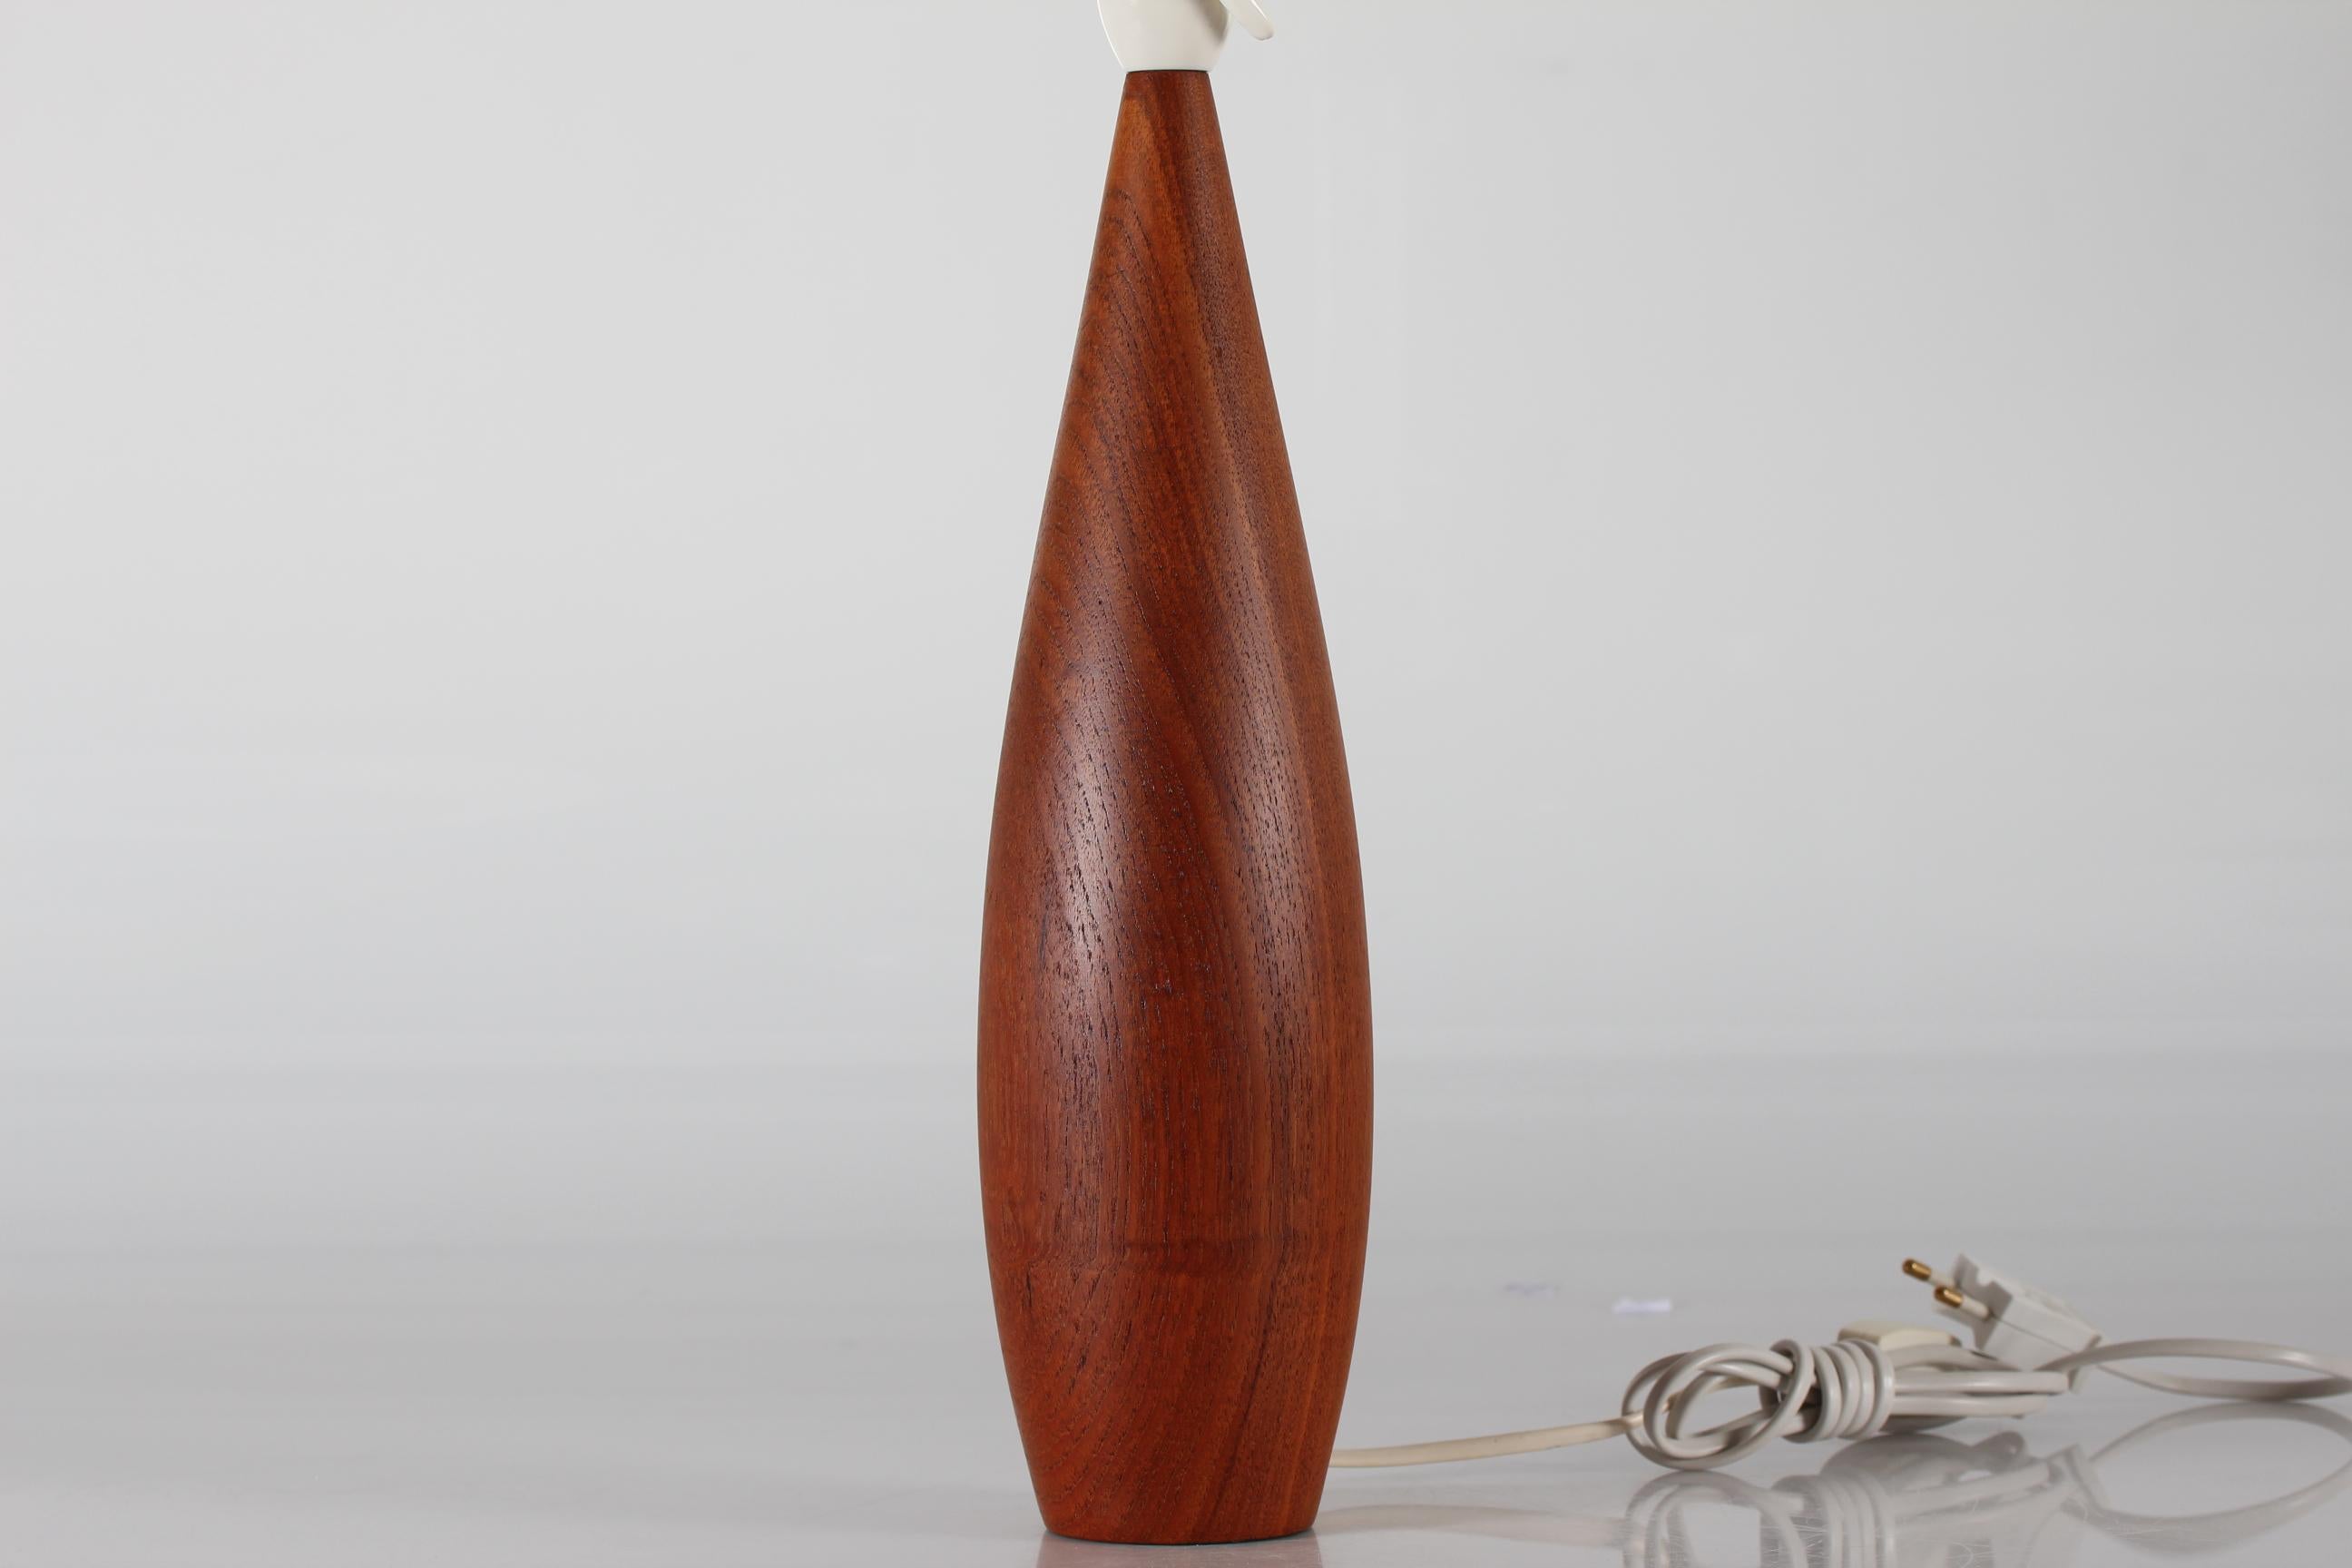 Lampe de table scandinave des années 1960.
Le pied de lampe, haut et fin, est fabriqué en teck massif tourné à la main et monté avec un nouvel abat-jour.

Mesures : Hauteur 60 cm
Hauteur du pied de lampe uniquement 36 cm
Diamètre de l'abat-jour